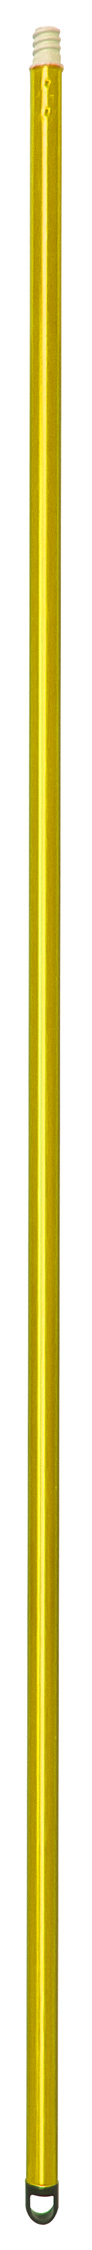 Рукоятка HACCPER эконом, 1370 мм, желтая